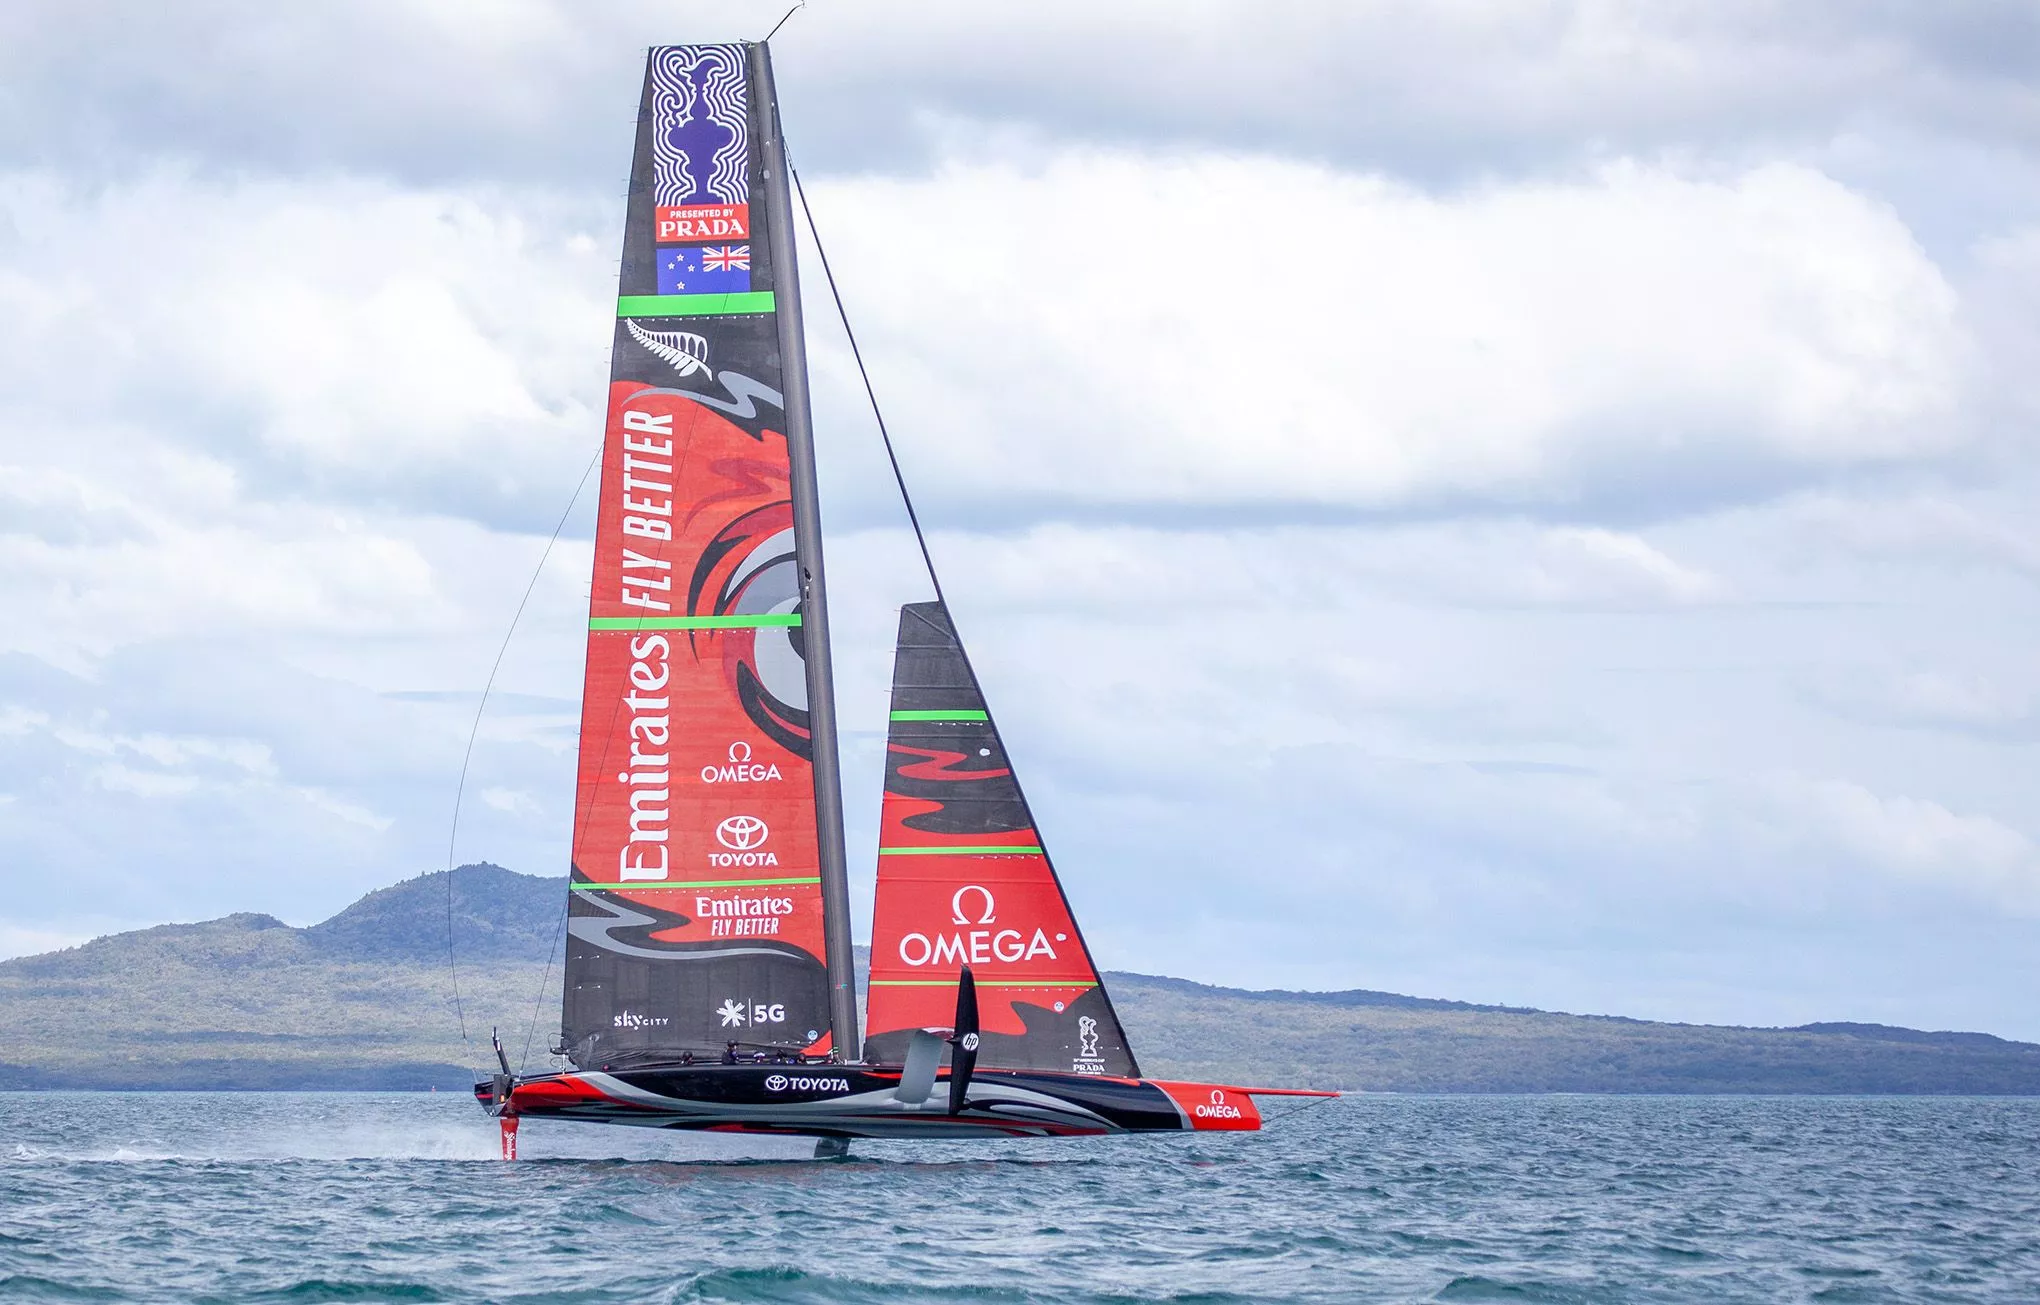 Die Titelverteidiger: Das Emirates Team New Zealand's. Der Name ihrer AC75-Jacht: "Te Aihe" – der Delfin